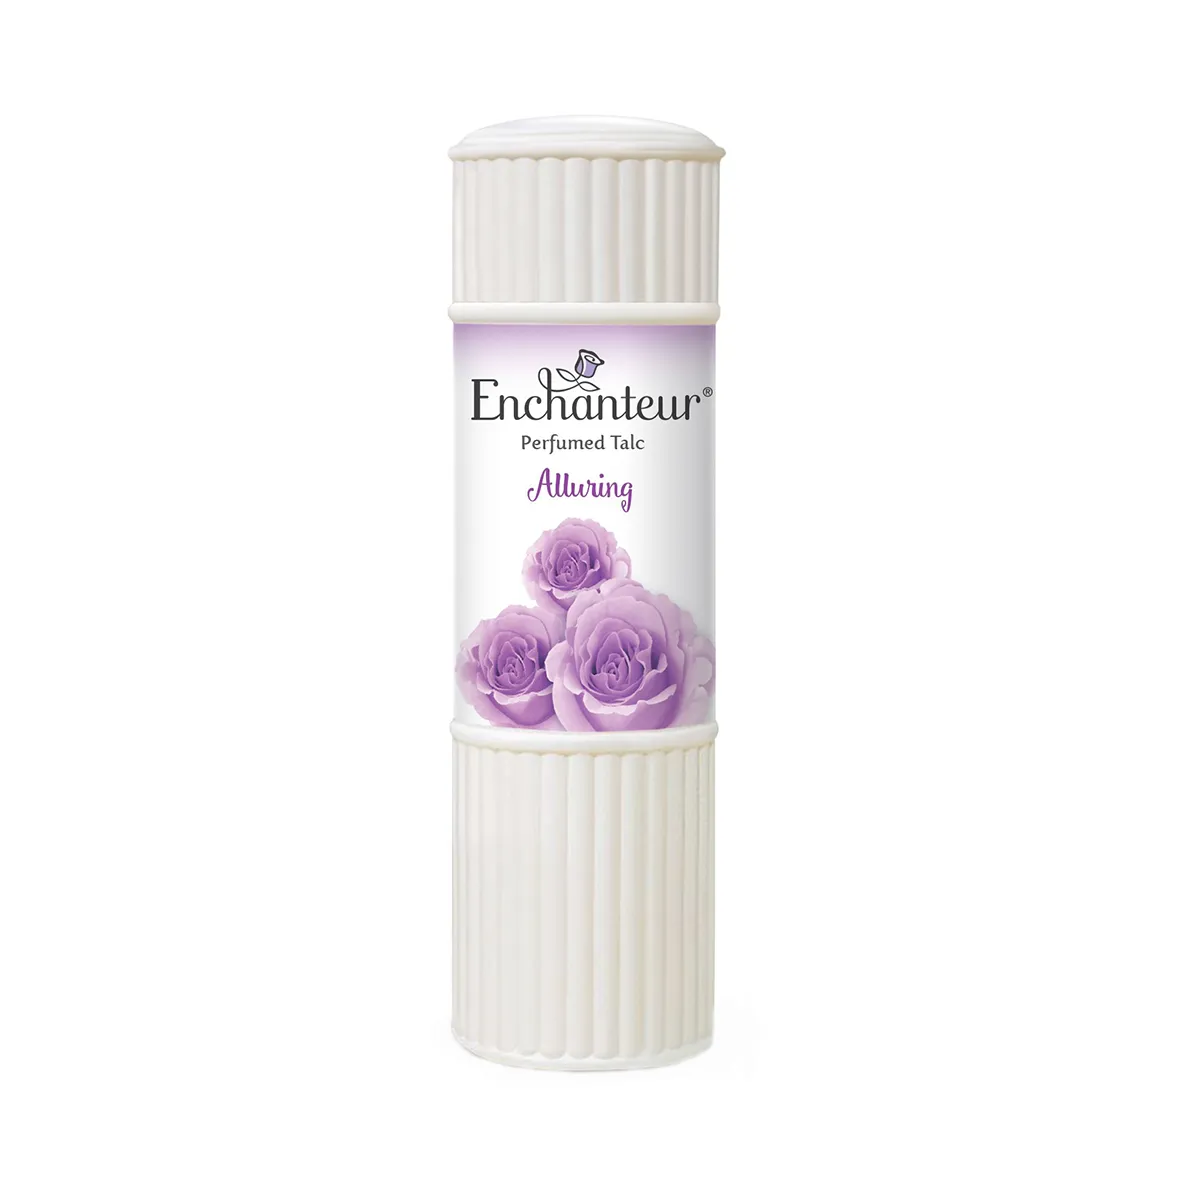 Enchanteur Alluring Perfumed TALC - 50g